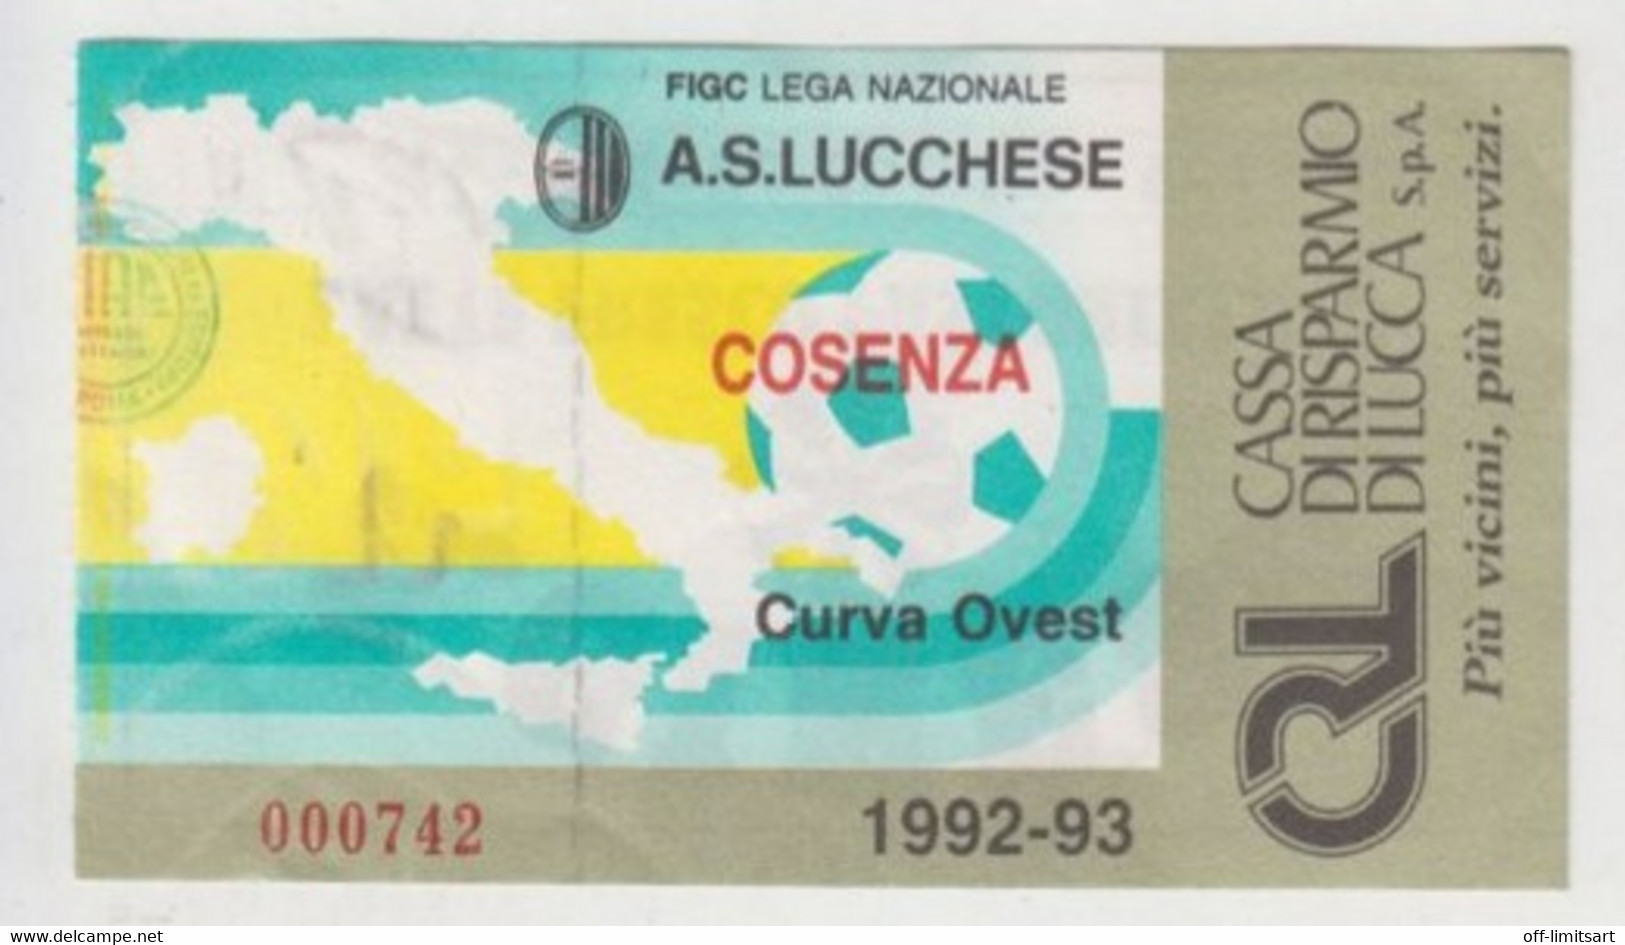 Lucchese - Cosenza  1992/93 - Calcio - Ticket , Biglietto Ingresso Stadio - N. 000742 - Tickets - Entradas